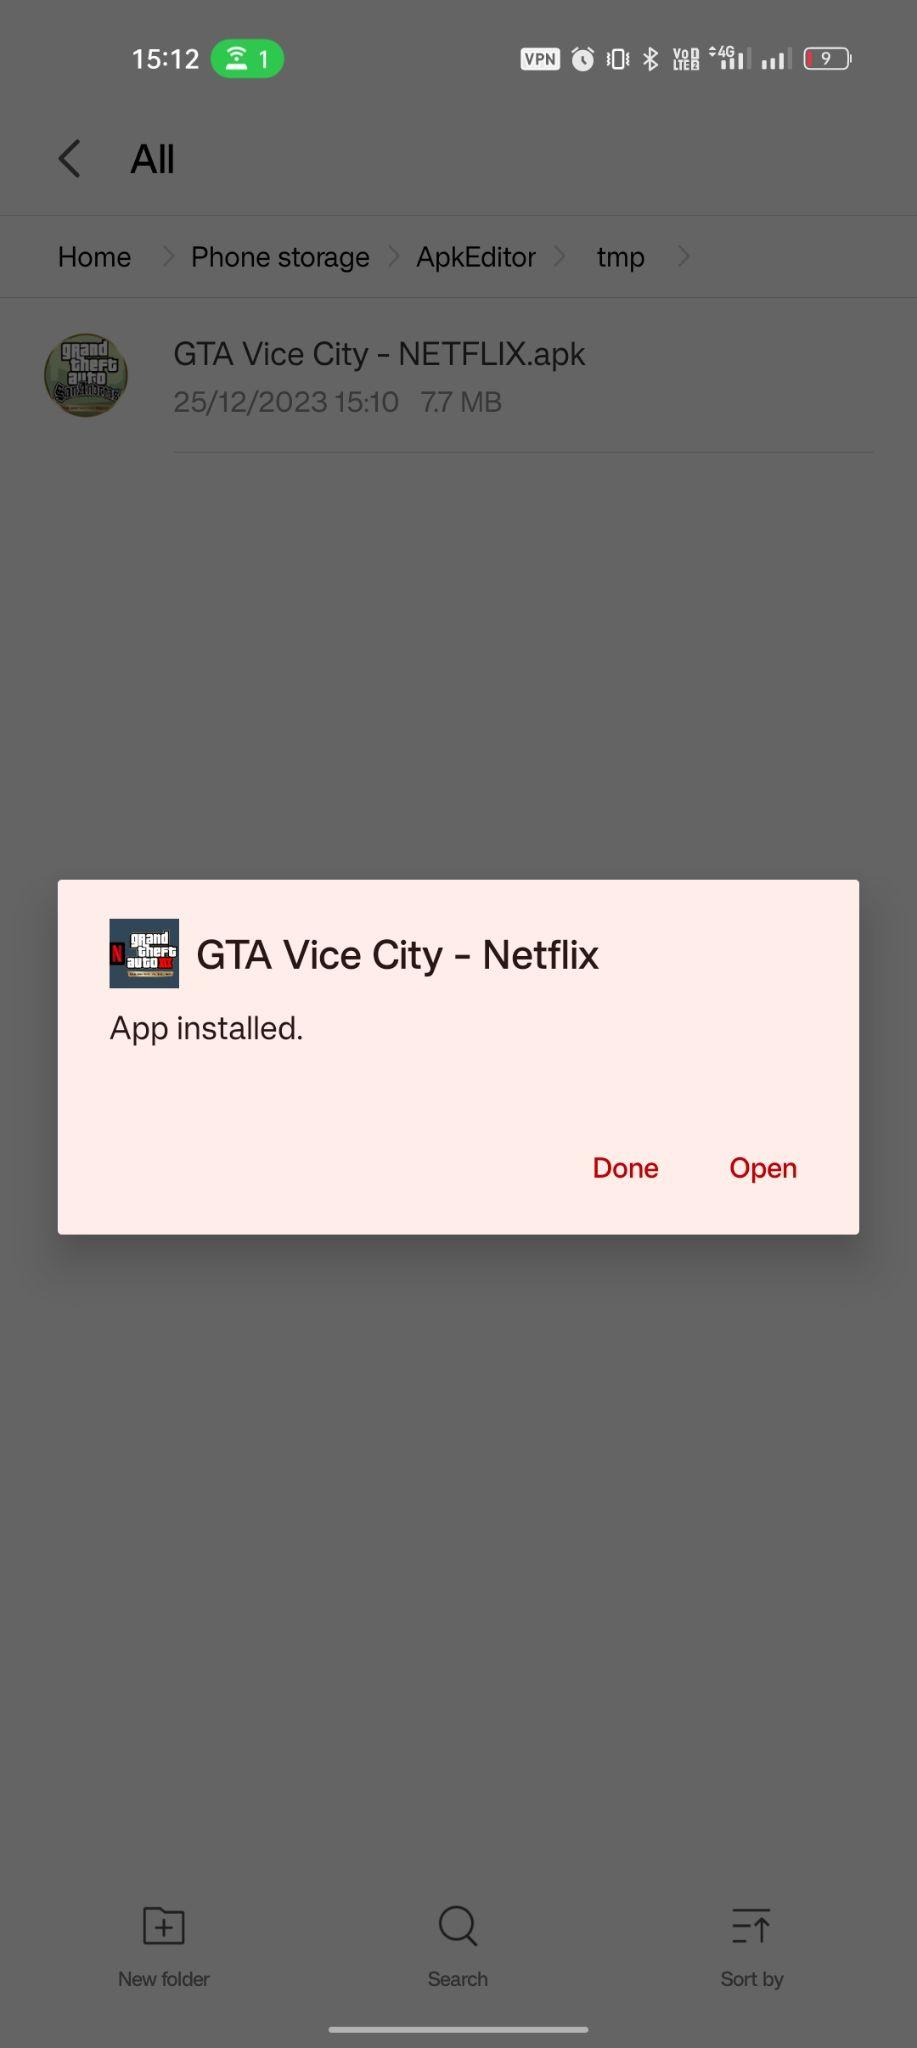 GTA : Vice City - Netflix apk installé